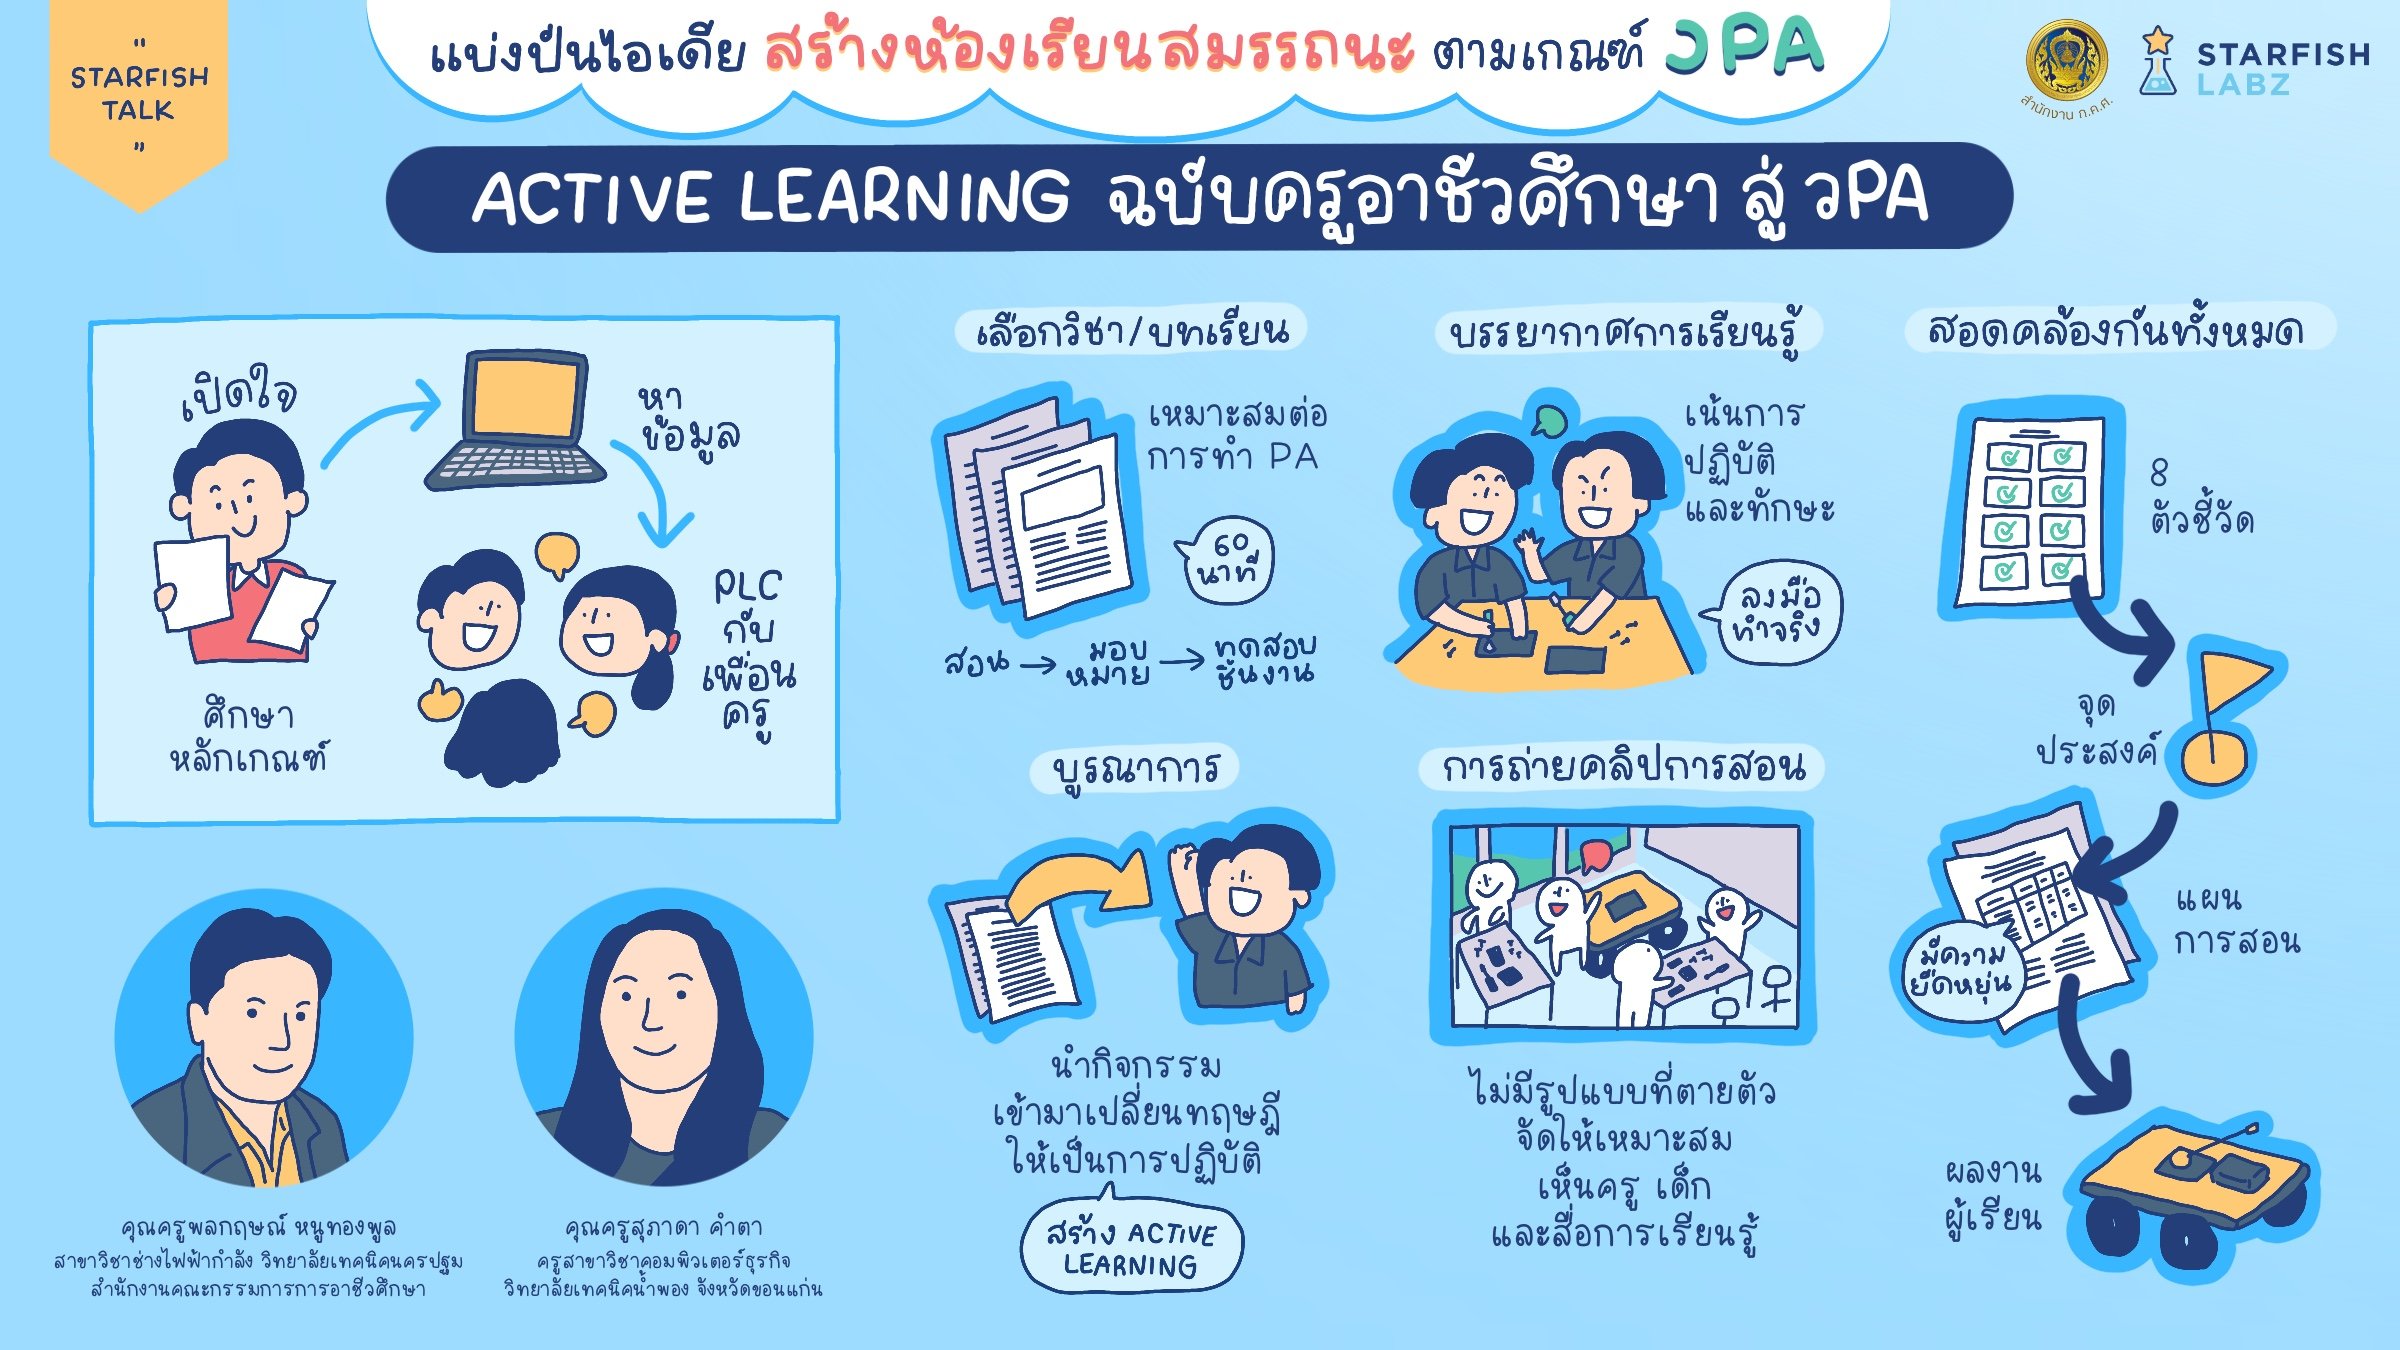 แบ่งปันไอเดียสร้างโรงเรียนตามเกณฑ์ สมรรถนะ ว.PA  Active Learning ฉบับครูอาชีวศึกษา สู่ ว.PA